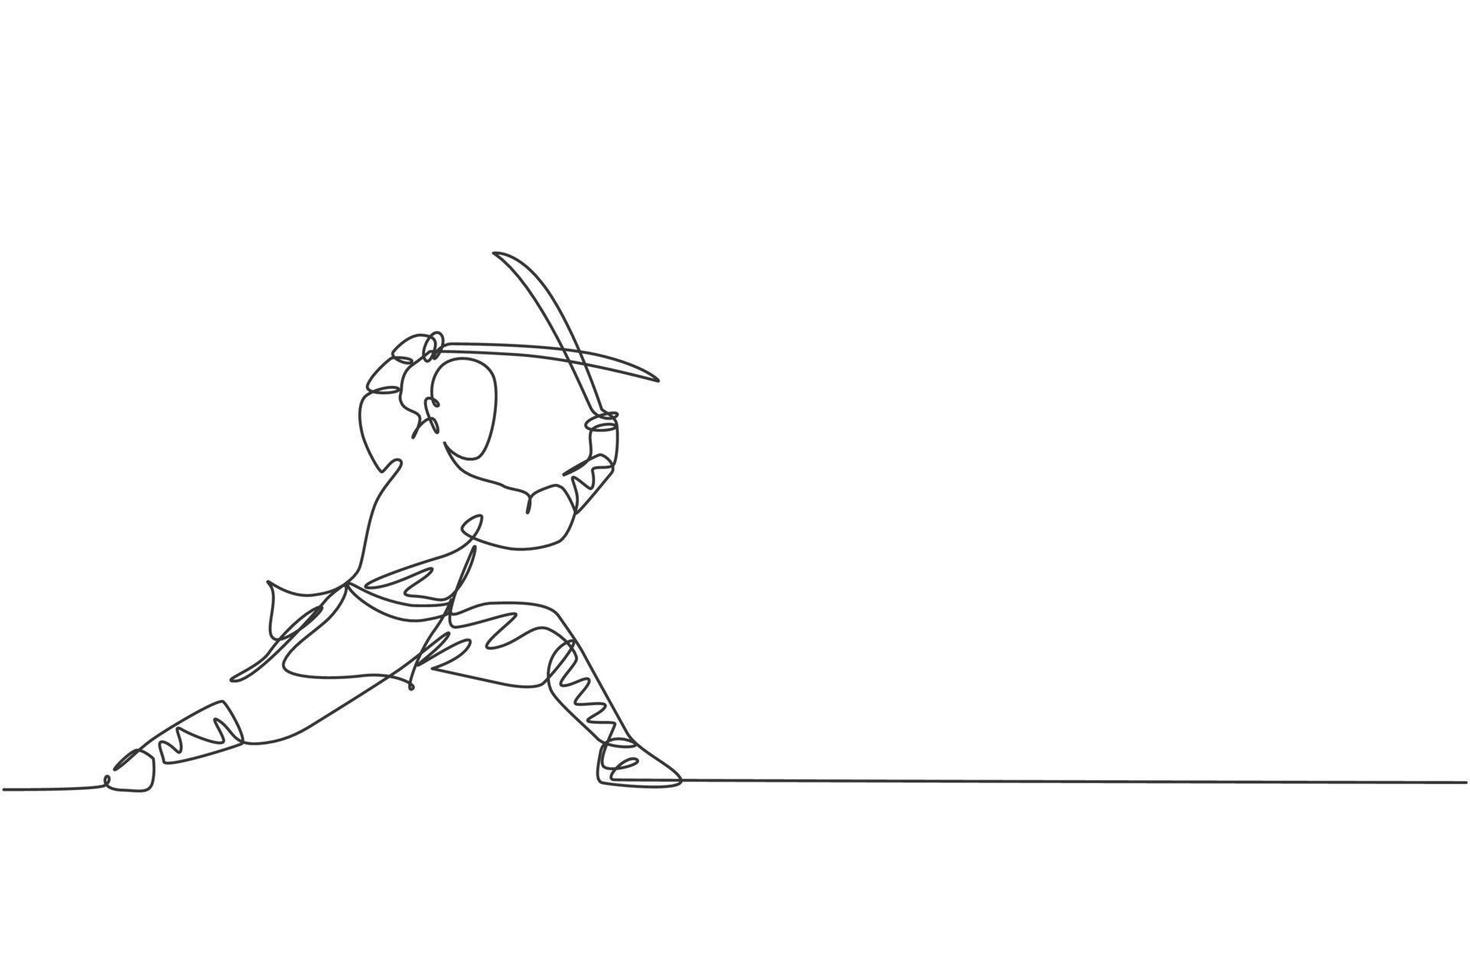 único desenho de linha contínua do jovem monge shaolin muscular segurando o trem de espada no templo shaolin. conceito de luta de kung fu chinês tradicional. ilustração em vetor design de desenho de uma linha na moda